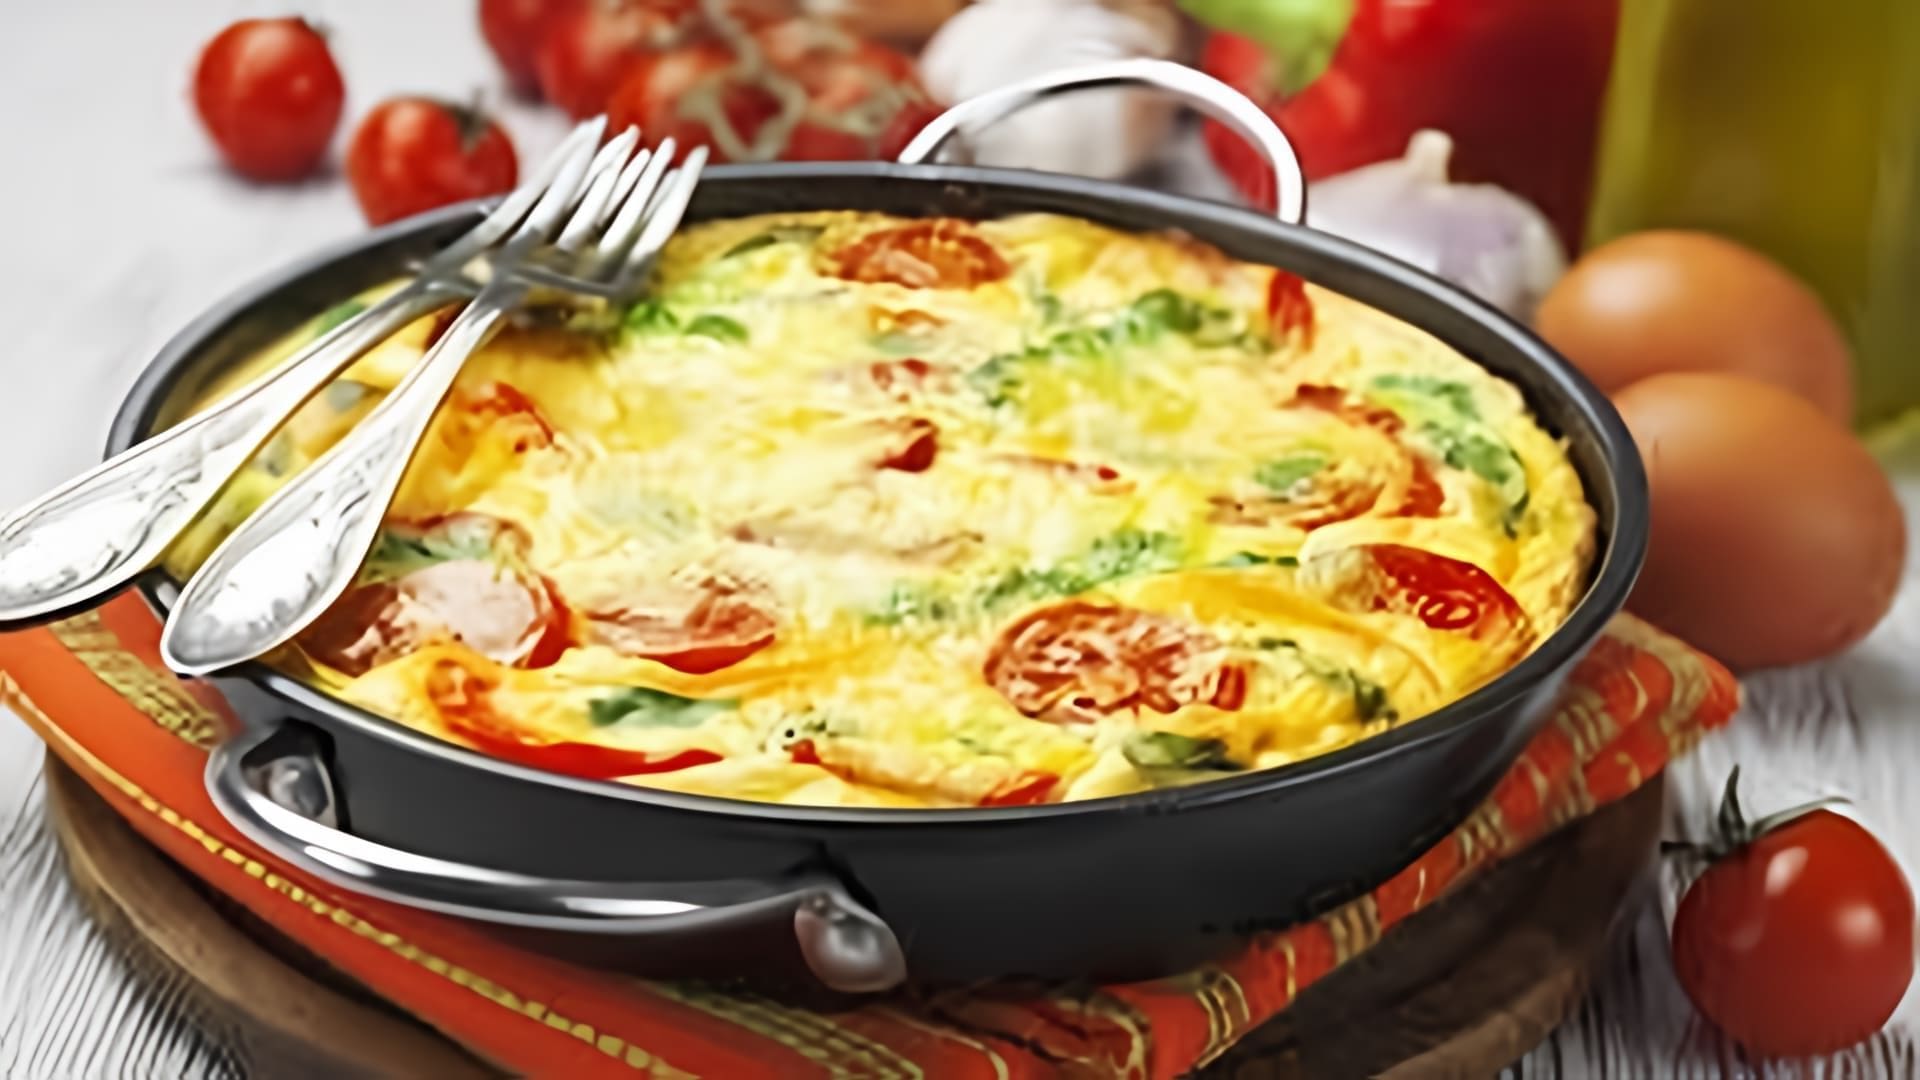 В этом видео демонстрируется процесс приготовления итальянского завтрака - фриттаты